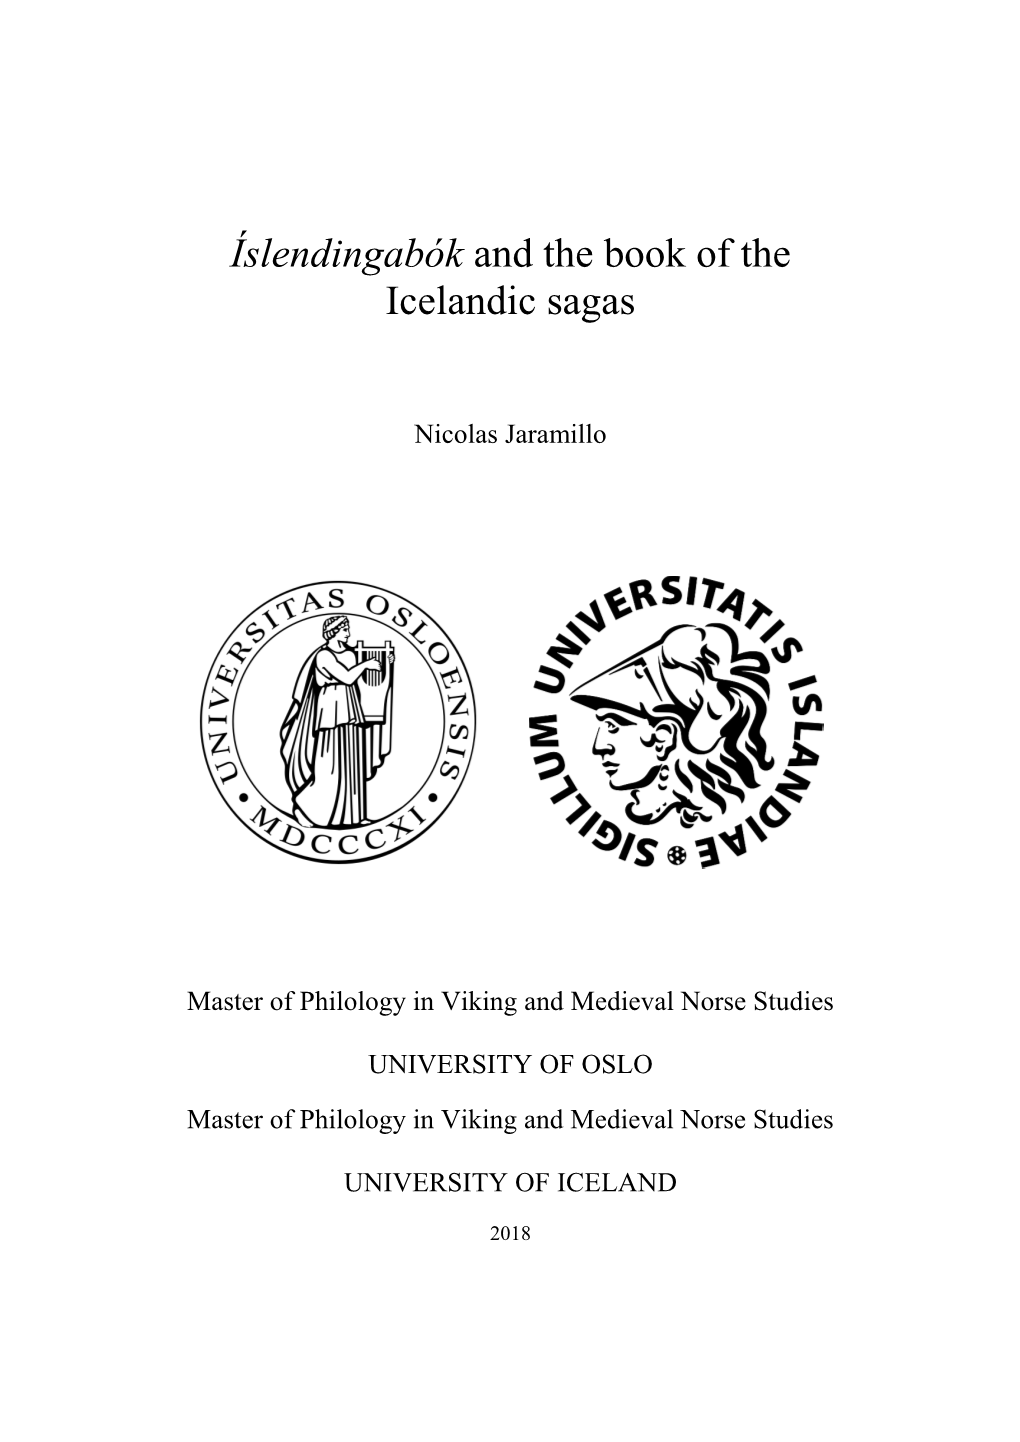 Íslendingabók and the Book of the Icelandic Sagas